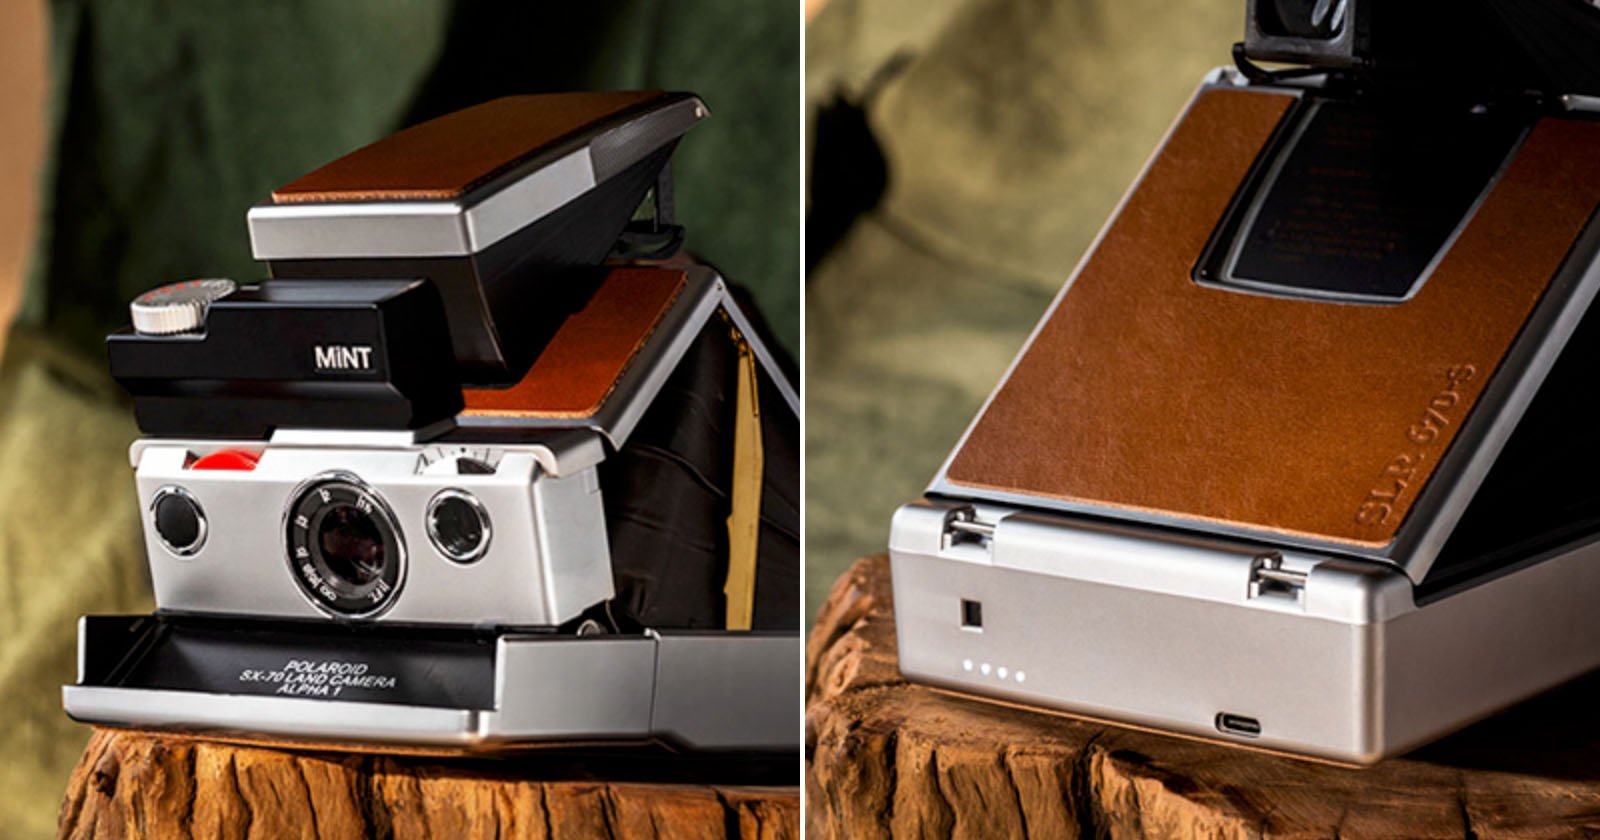 Bewijs begrijpen Verfijnen MiNT SLR670 (Type i) Offers Vintage Polaroid Style with Modern Innovation |  PetaPixel